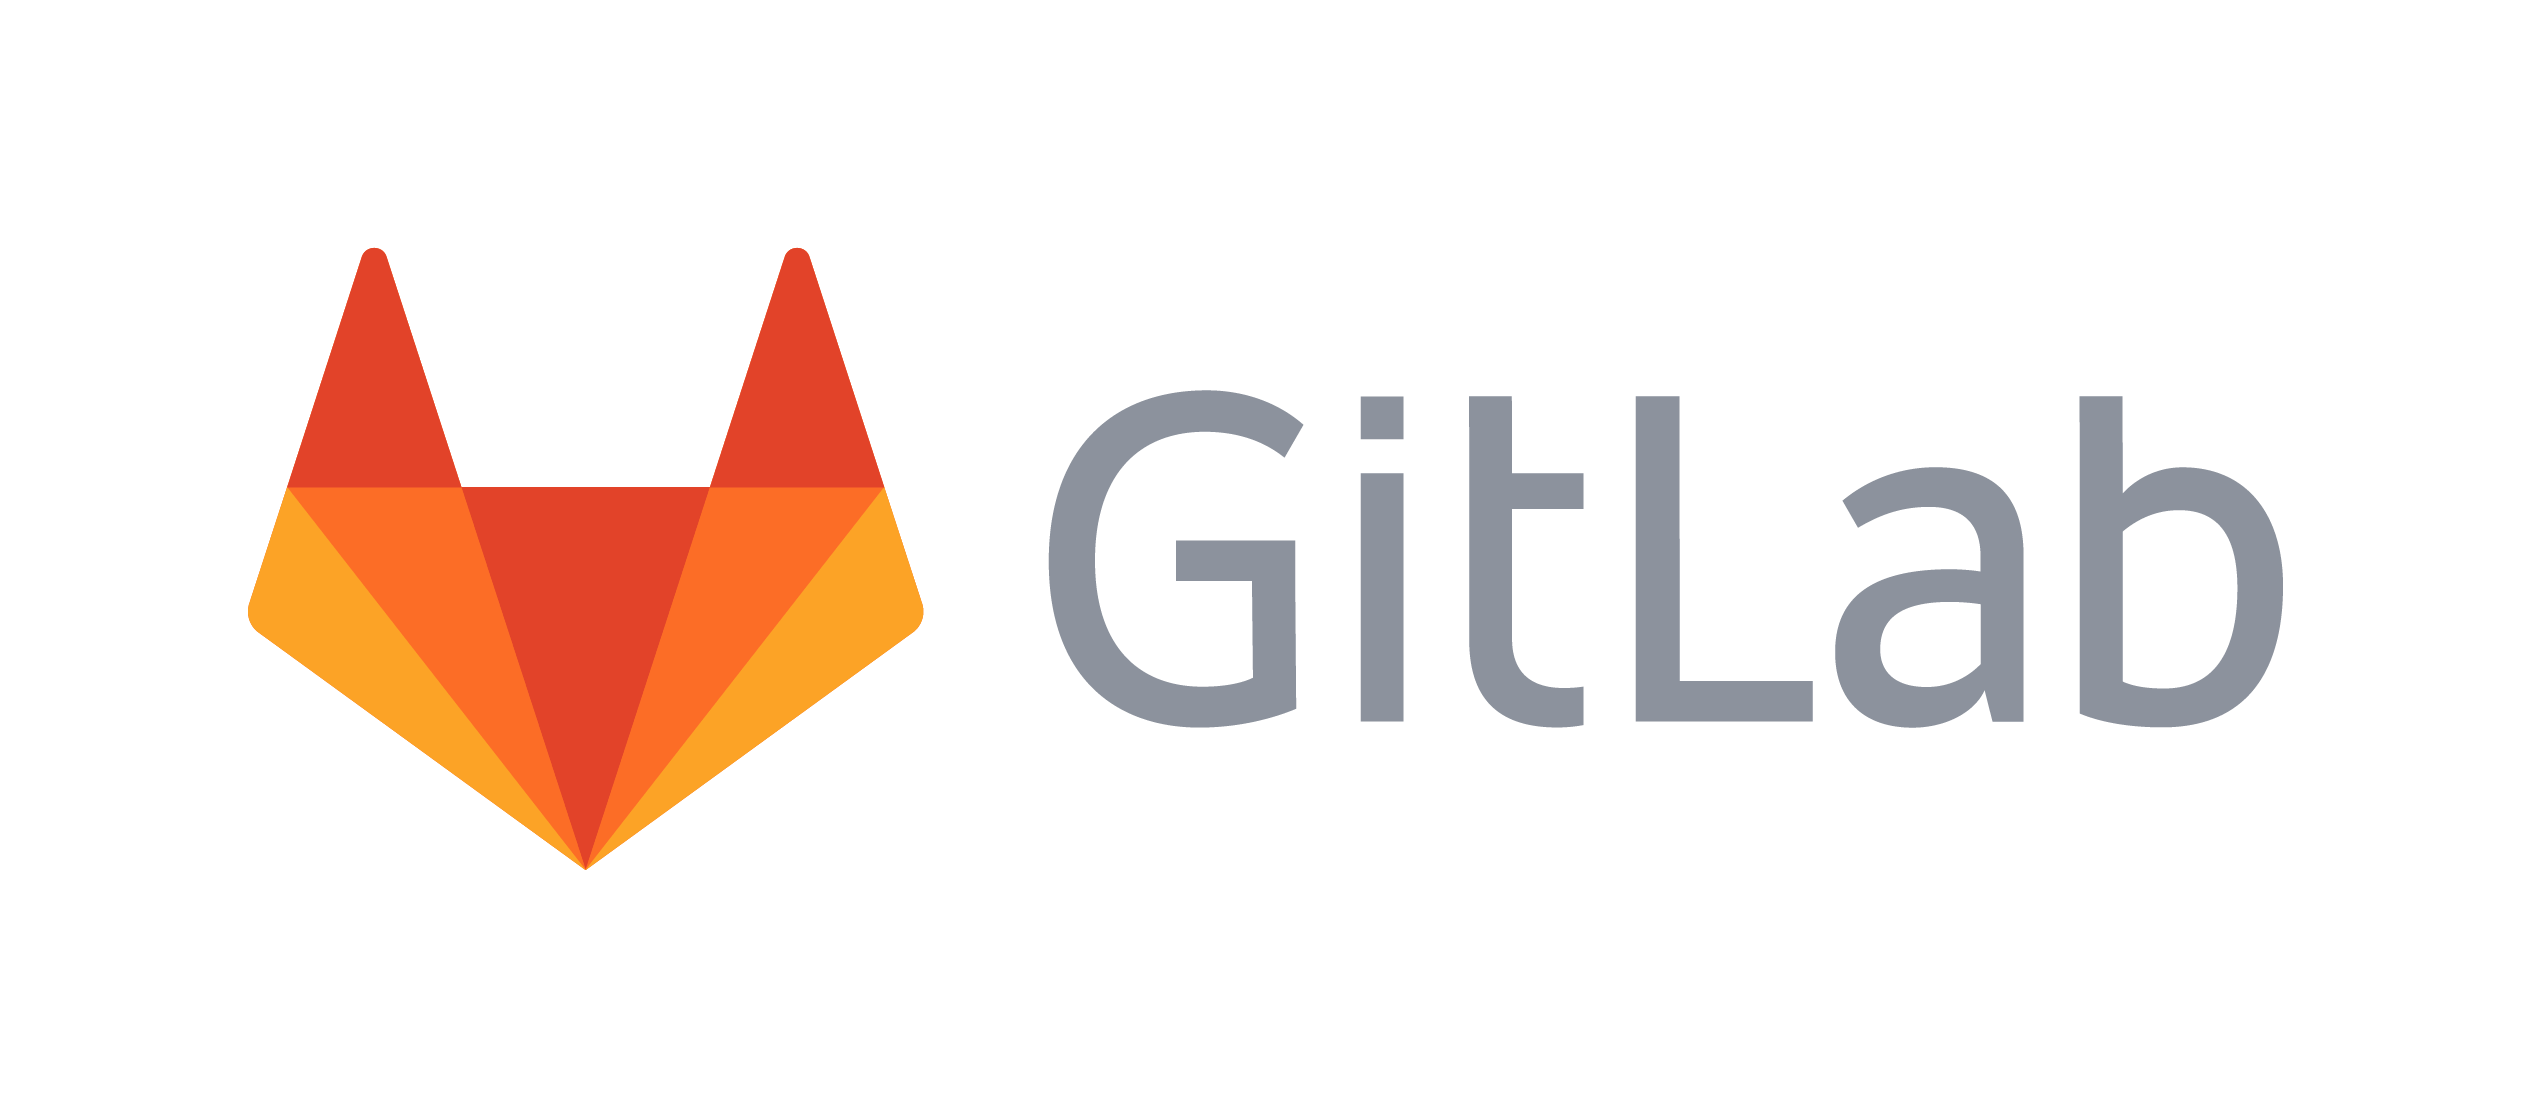 Компания GitLab из-за политики прекращает набор инженеров из России и Китая - 1